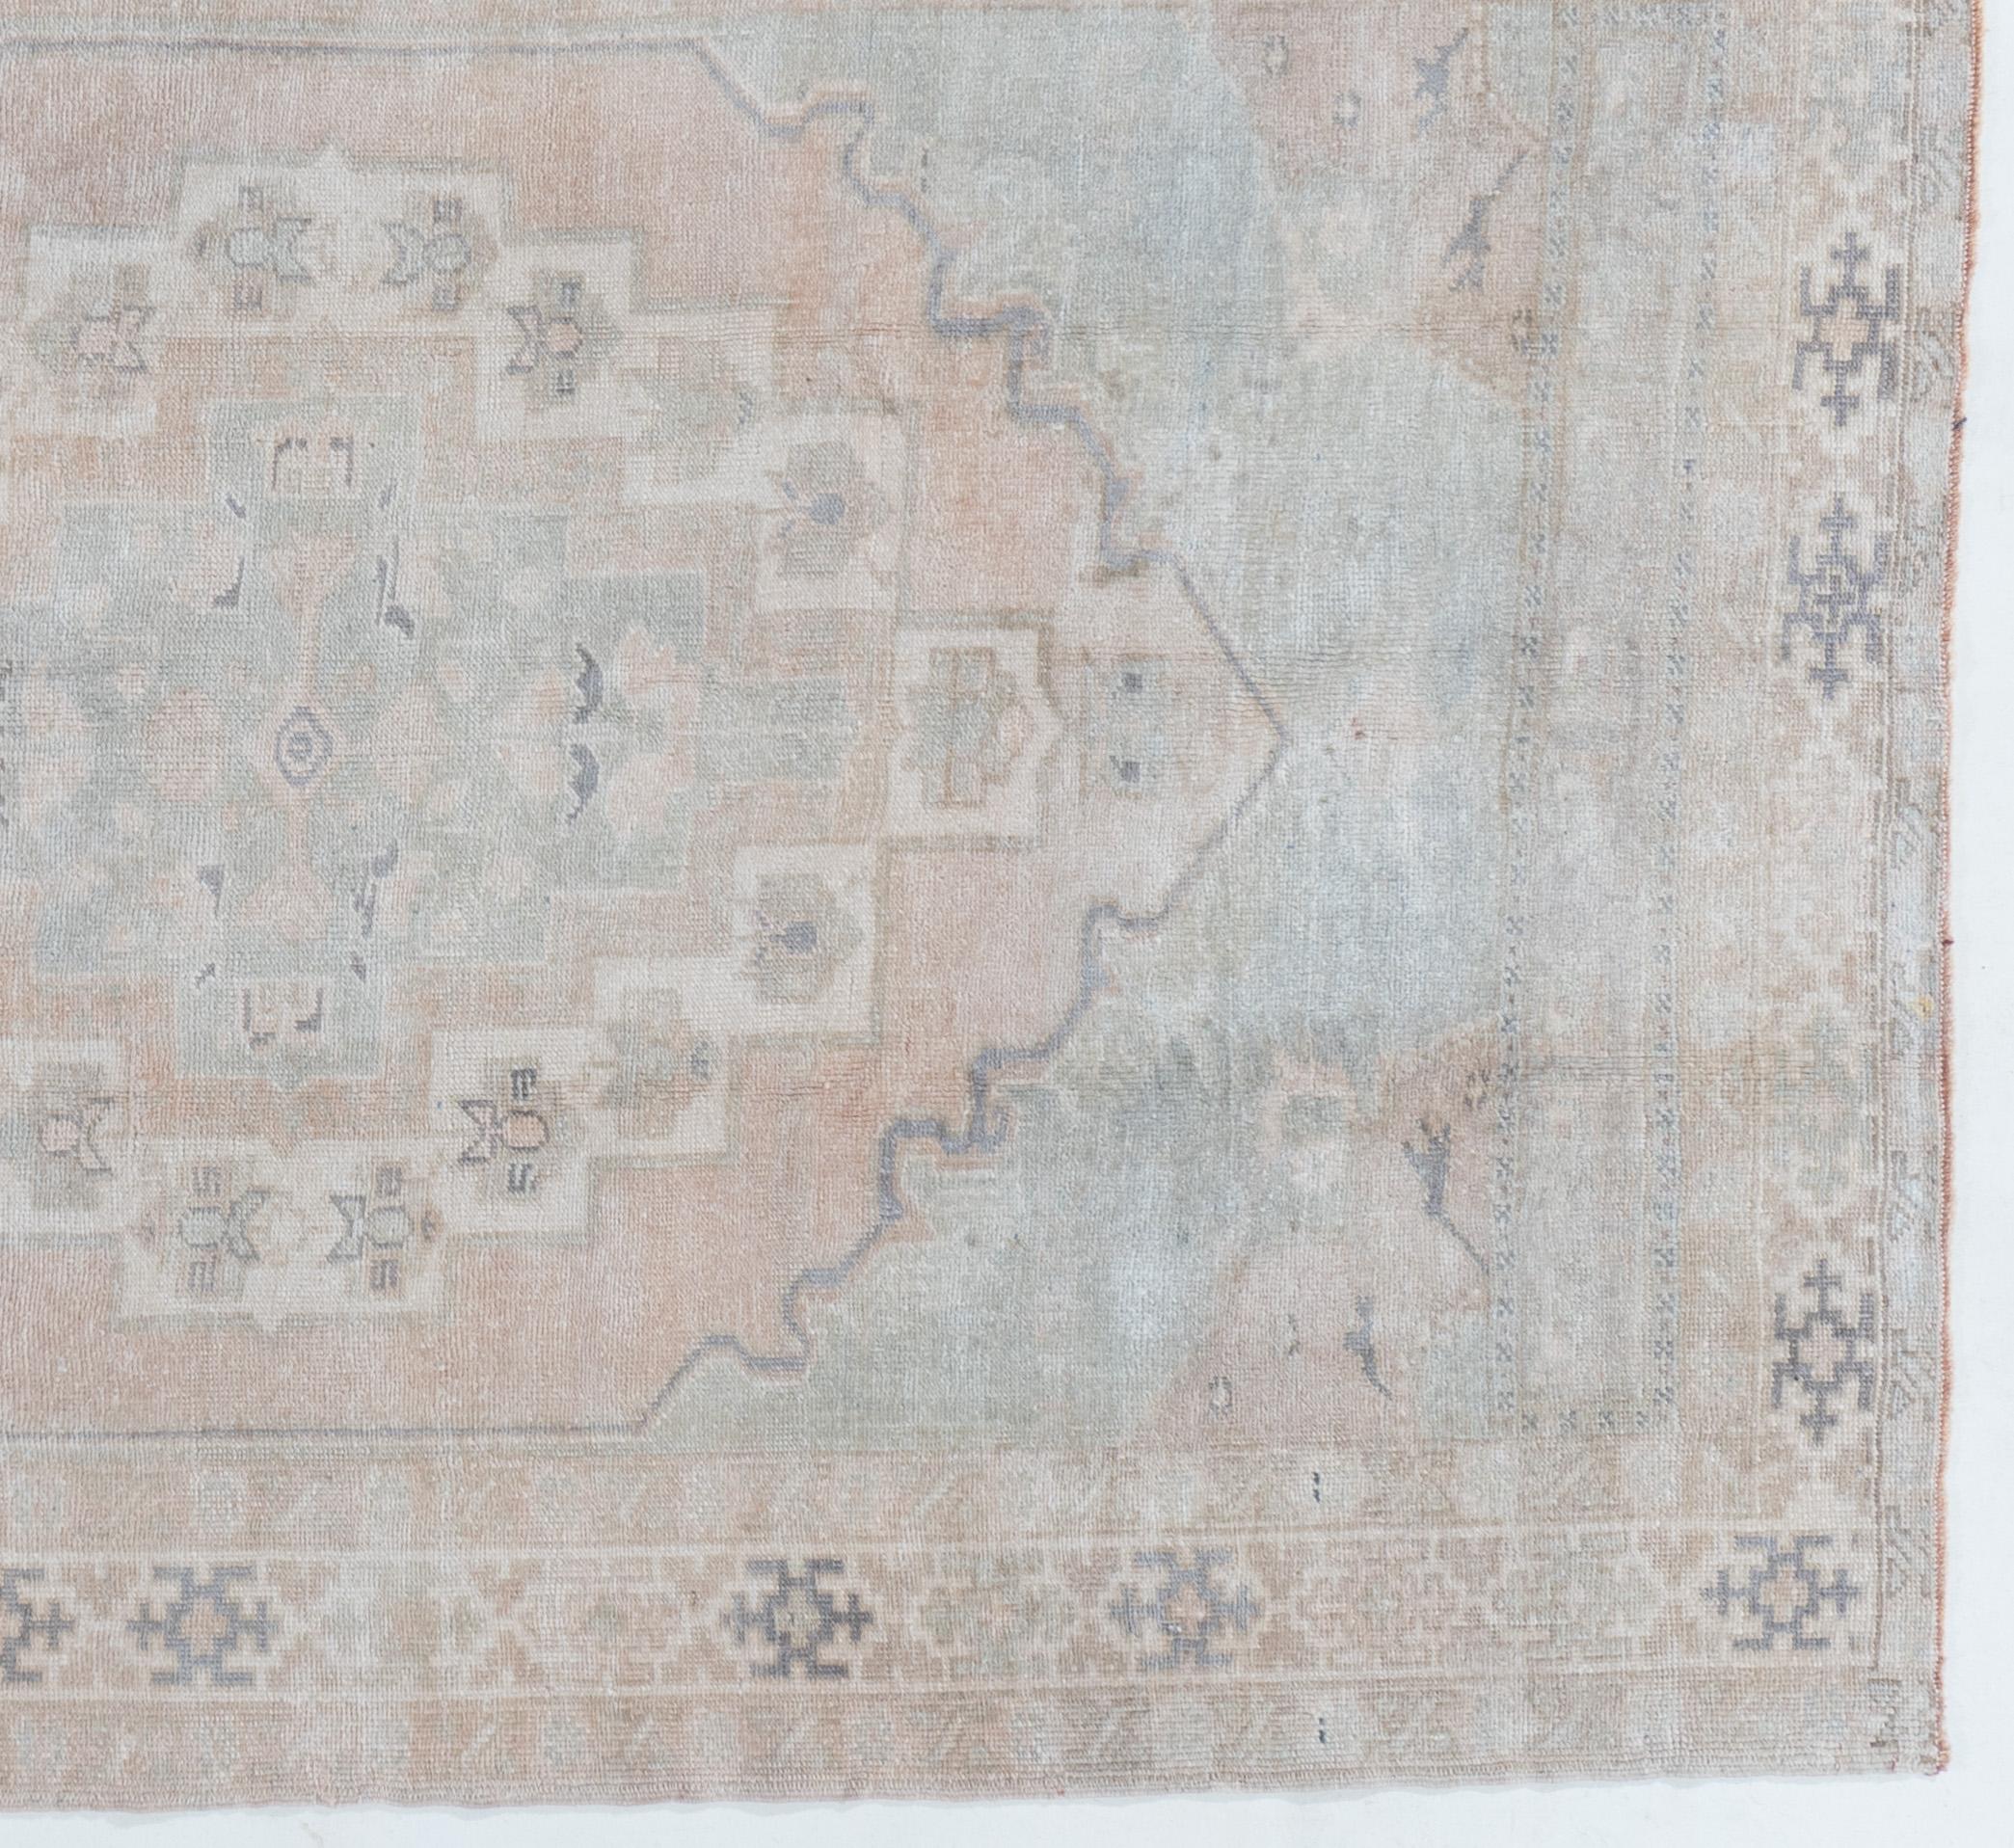 Tapis turc vintage Oushak 4'4 X 7'. La qualité luxueuse de la laine (pour laquelle les Oushaks ont toujours été célèbres) a contribué à la vivacité des couleurs. Contrairement à la plupart des tapis turcs, les tapis Oushak ont été fortement